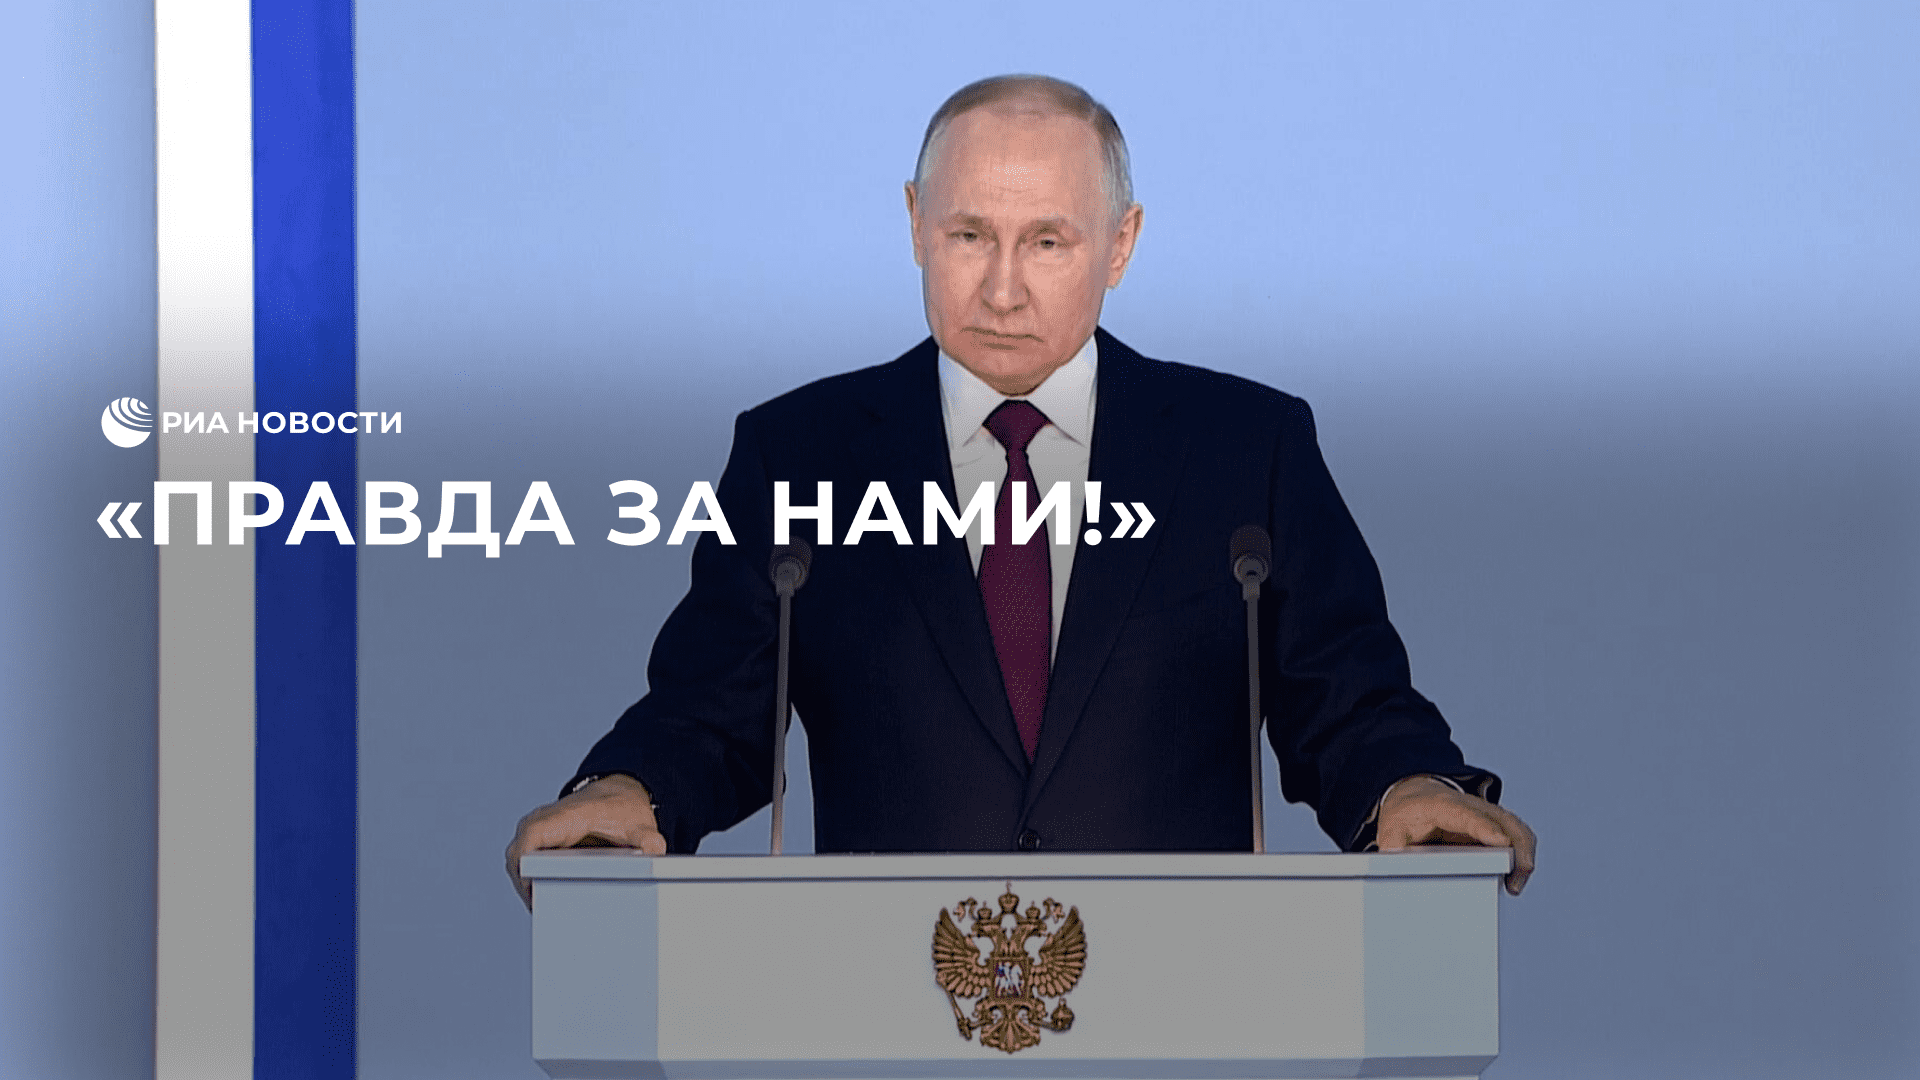 "Правда за нами!", заявил Путин